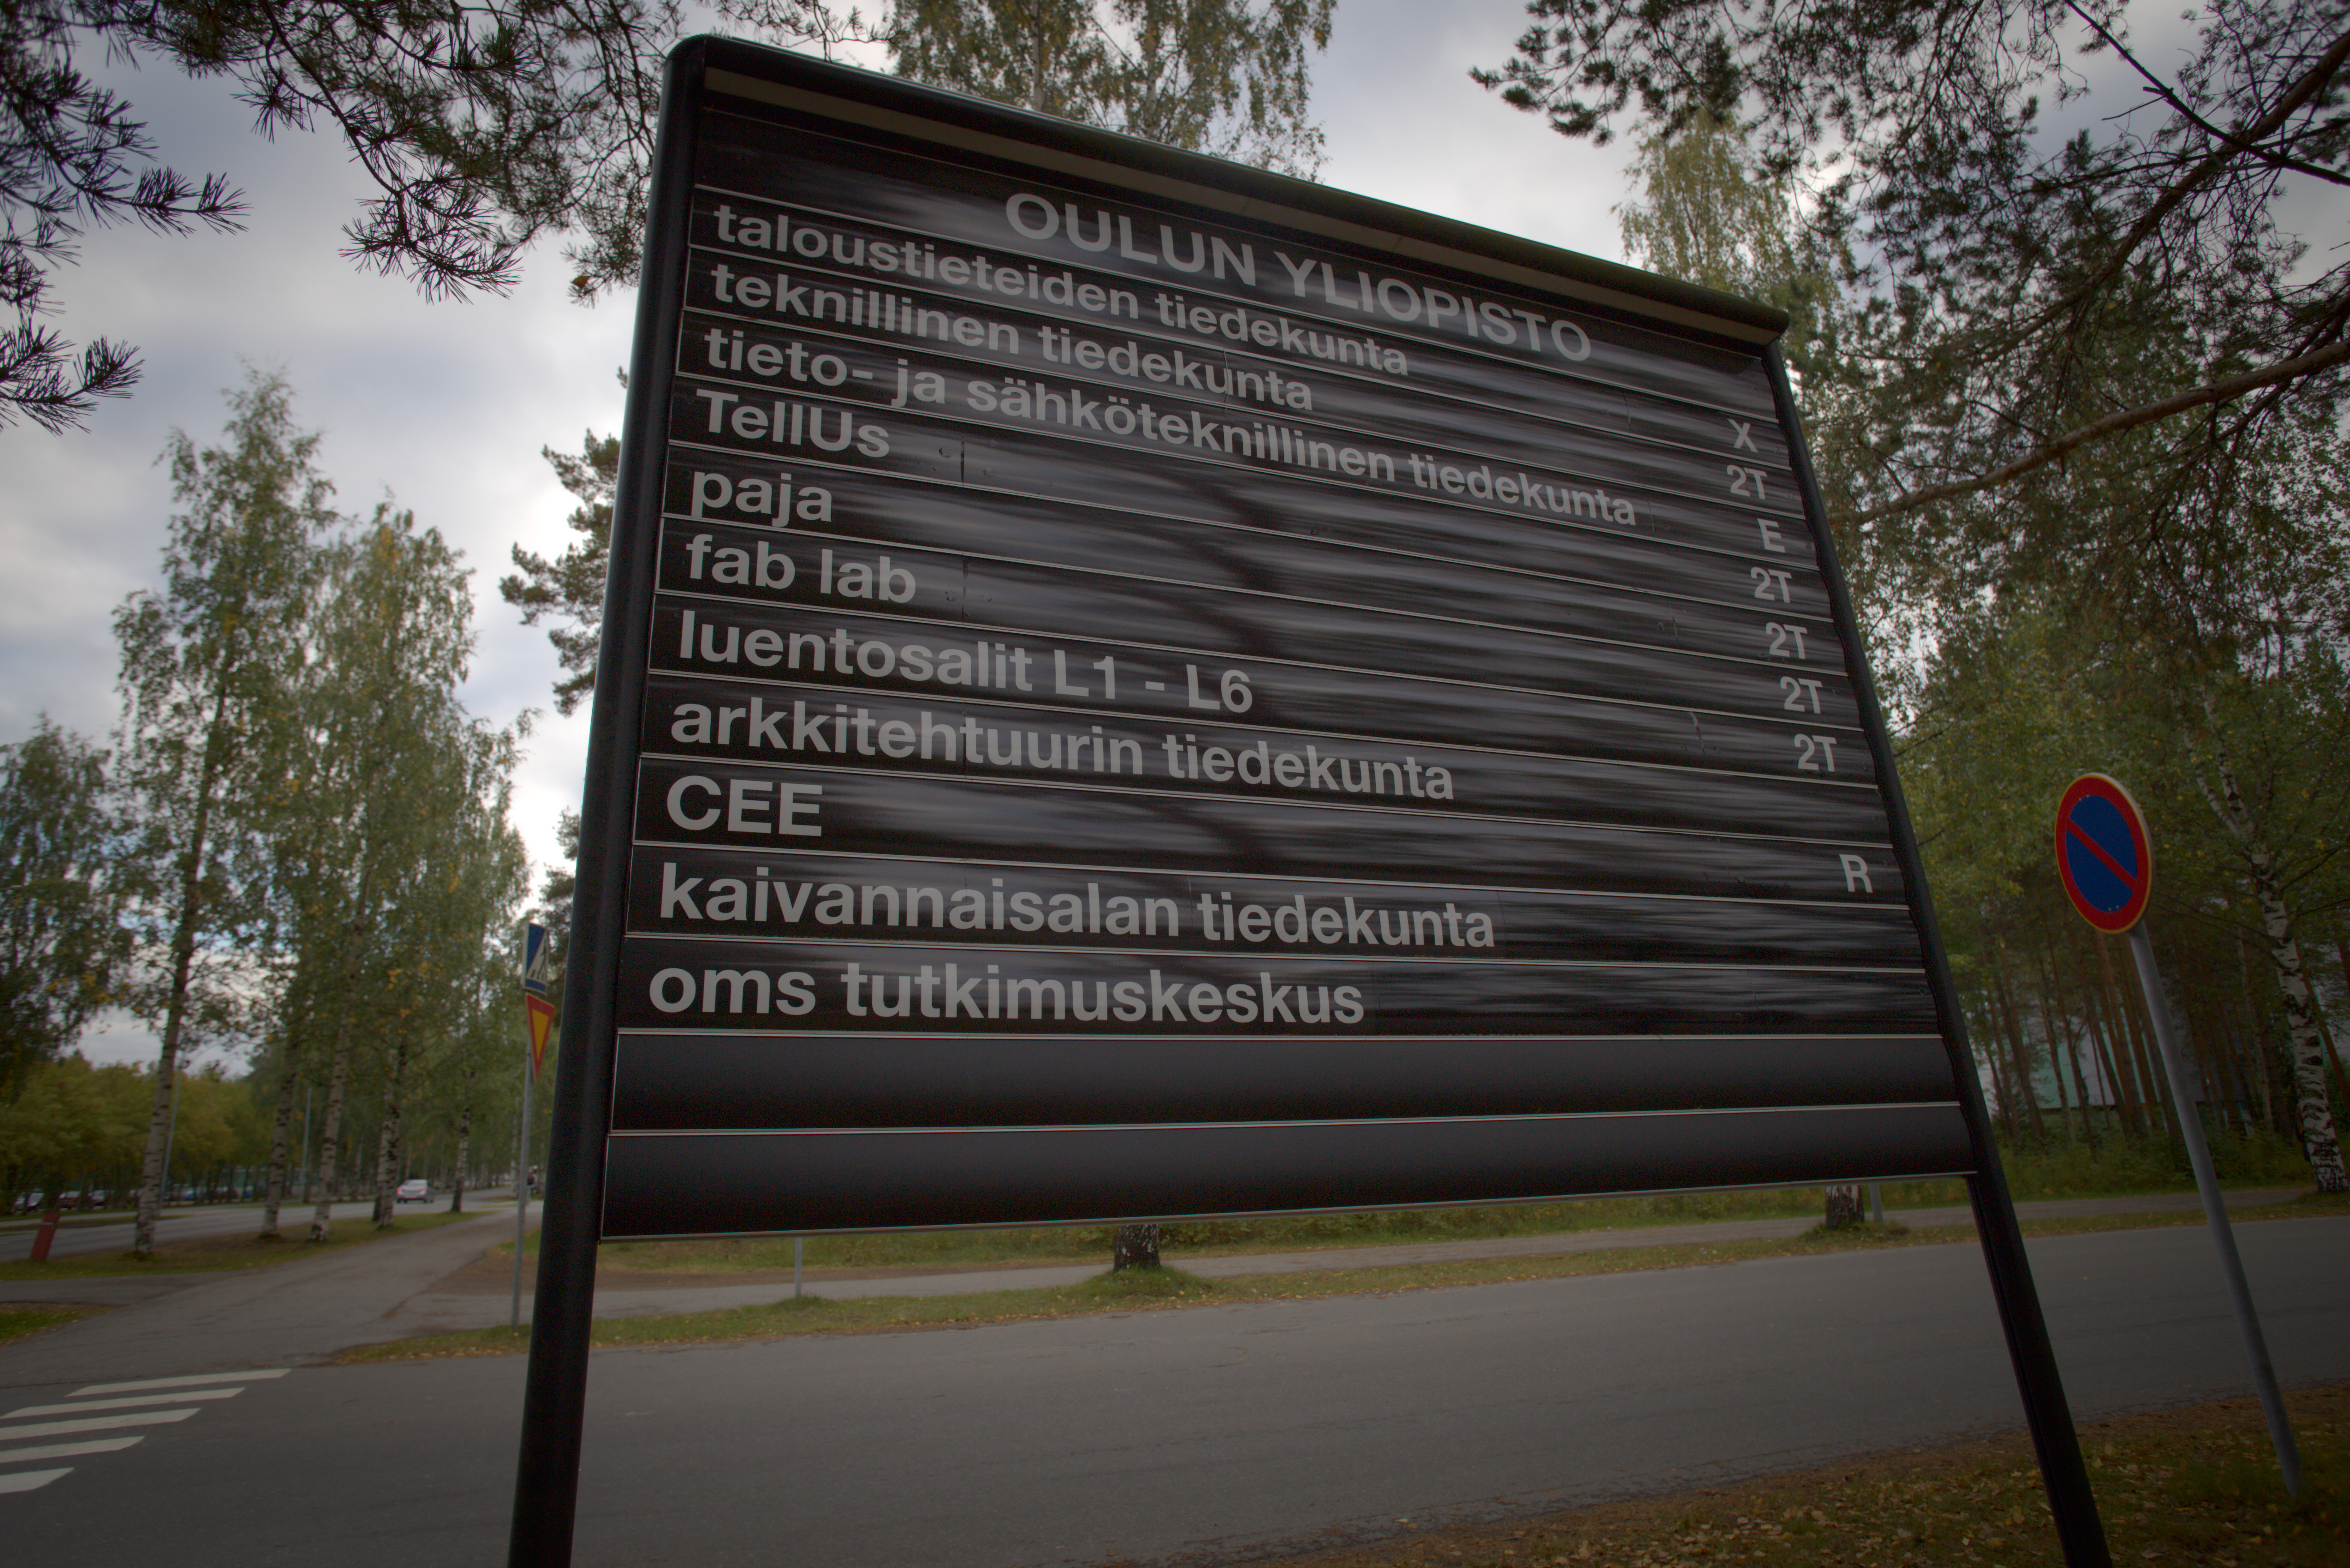 Oulun ylioppilaslehti 2017